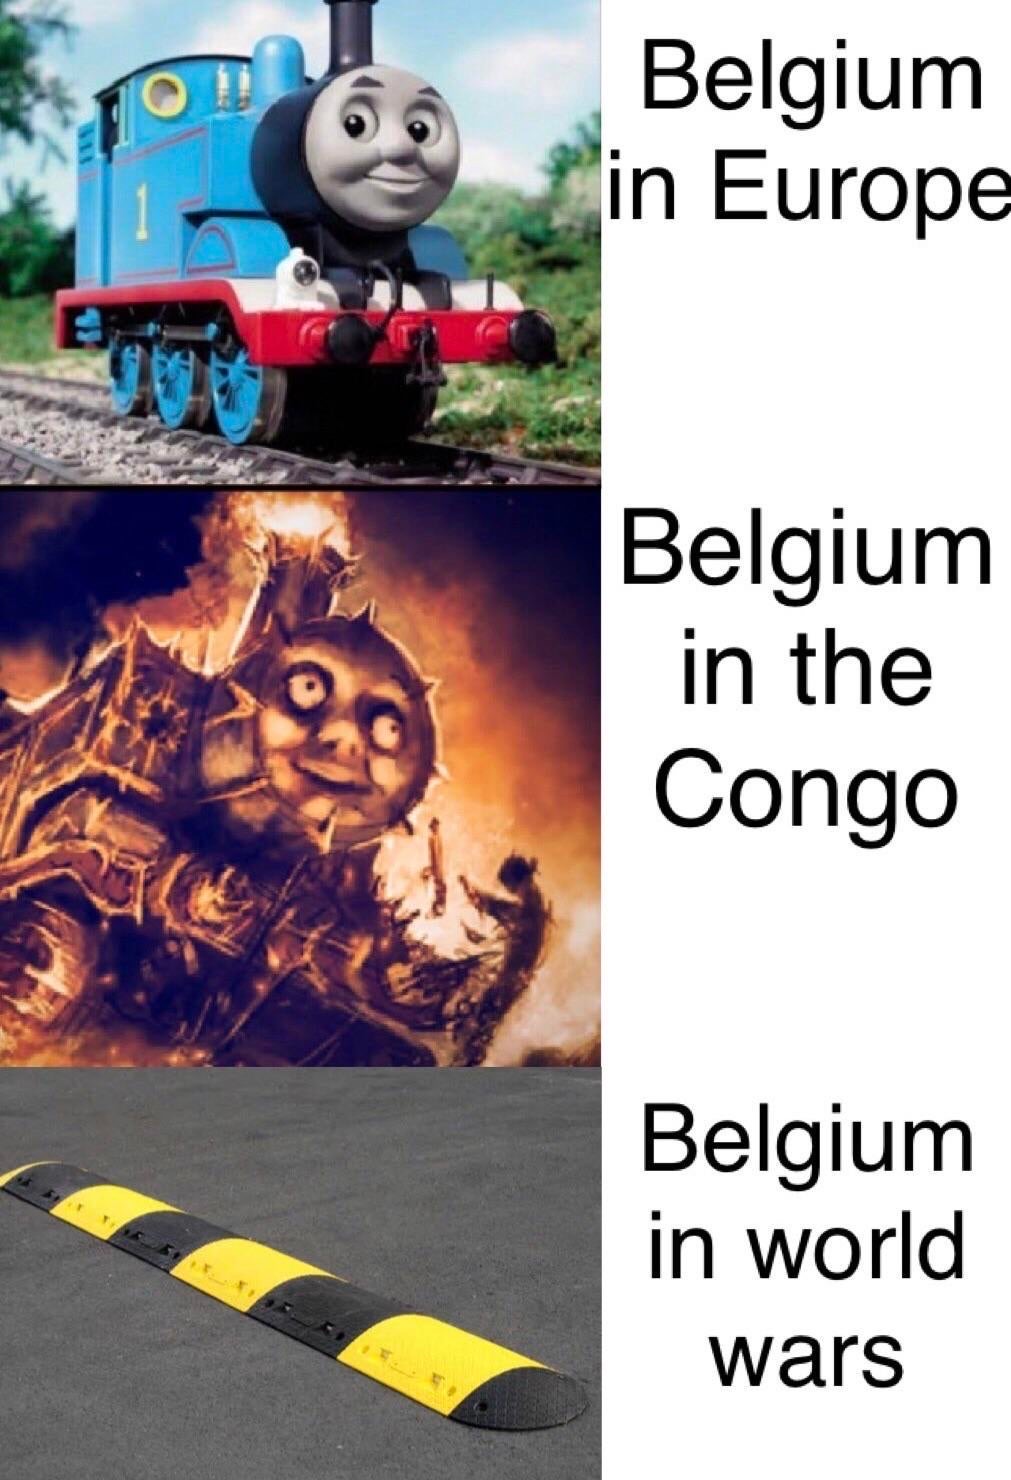 belgium in the congo meme - Belgium in Europe Belgium in the Congo Belgium in world wars